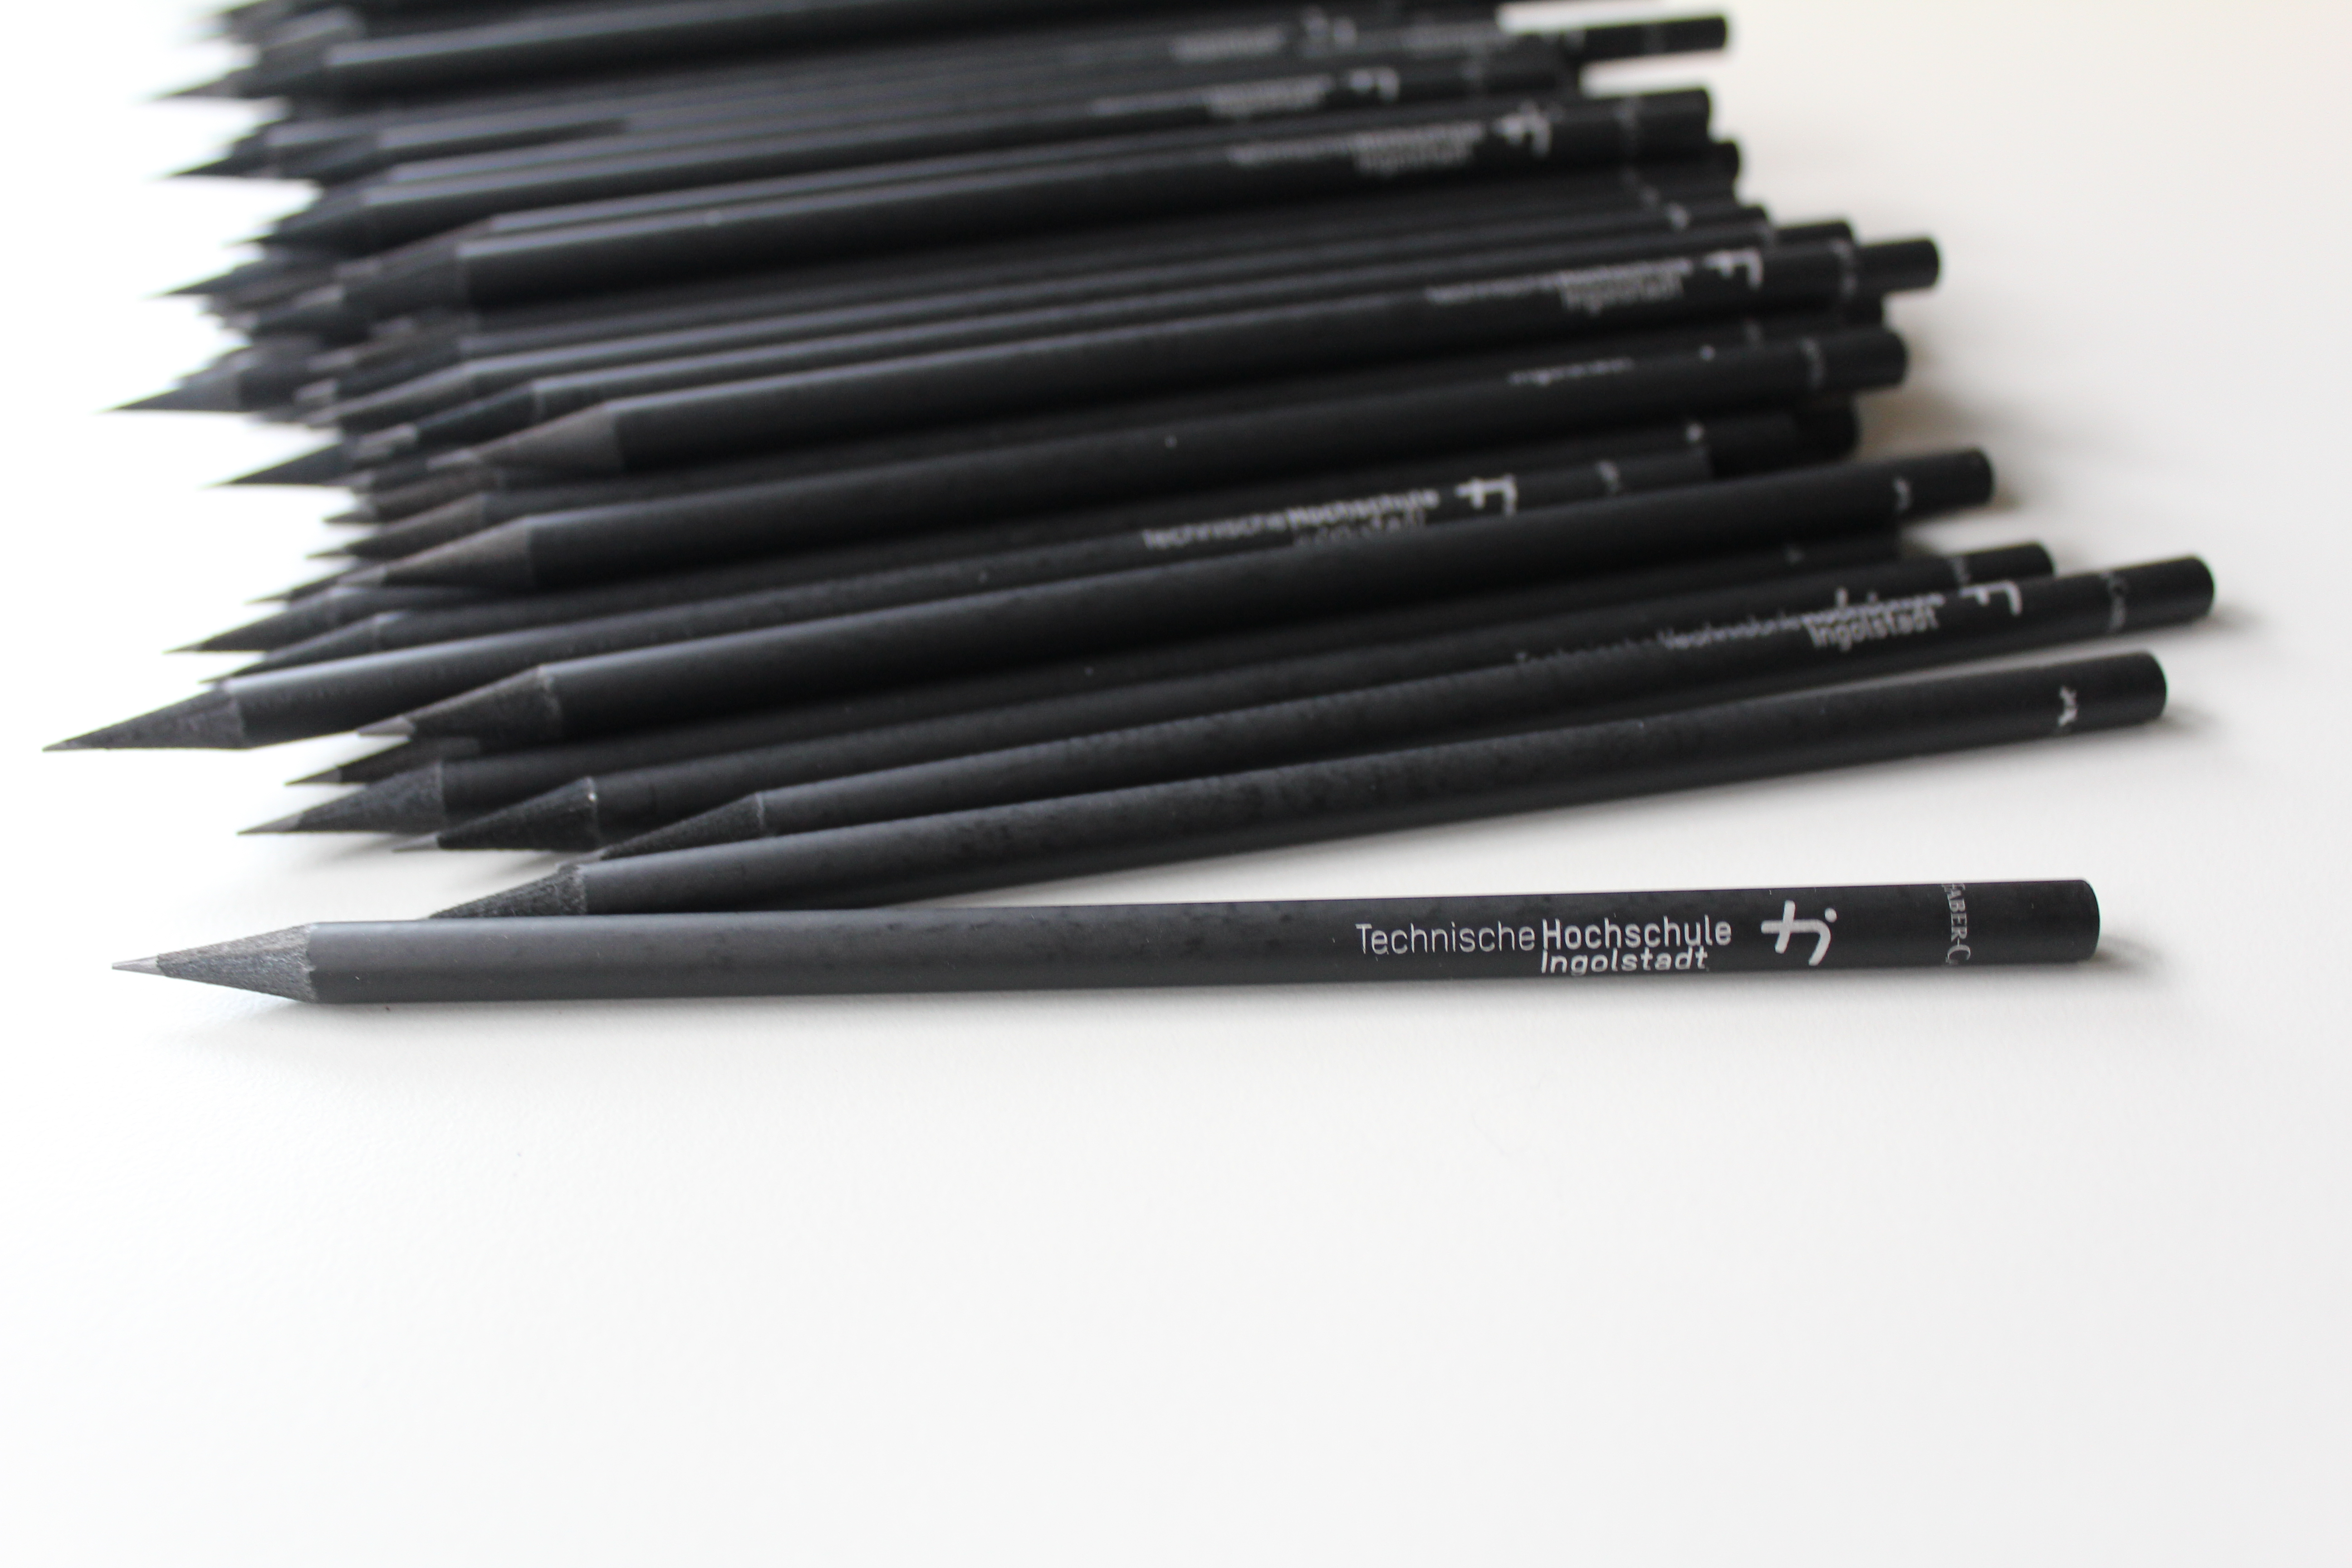 Viele schwarze THI-Bleistifte